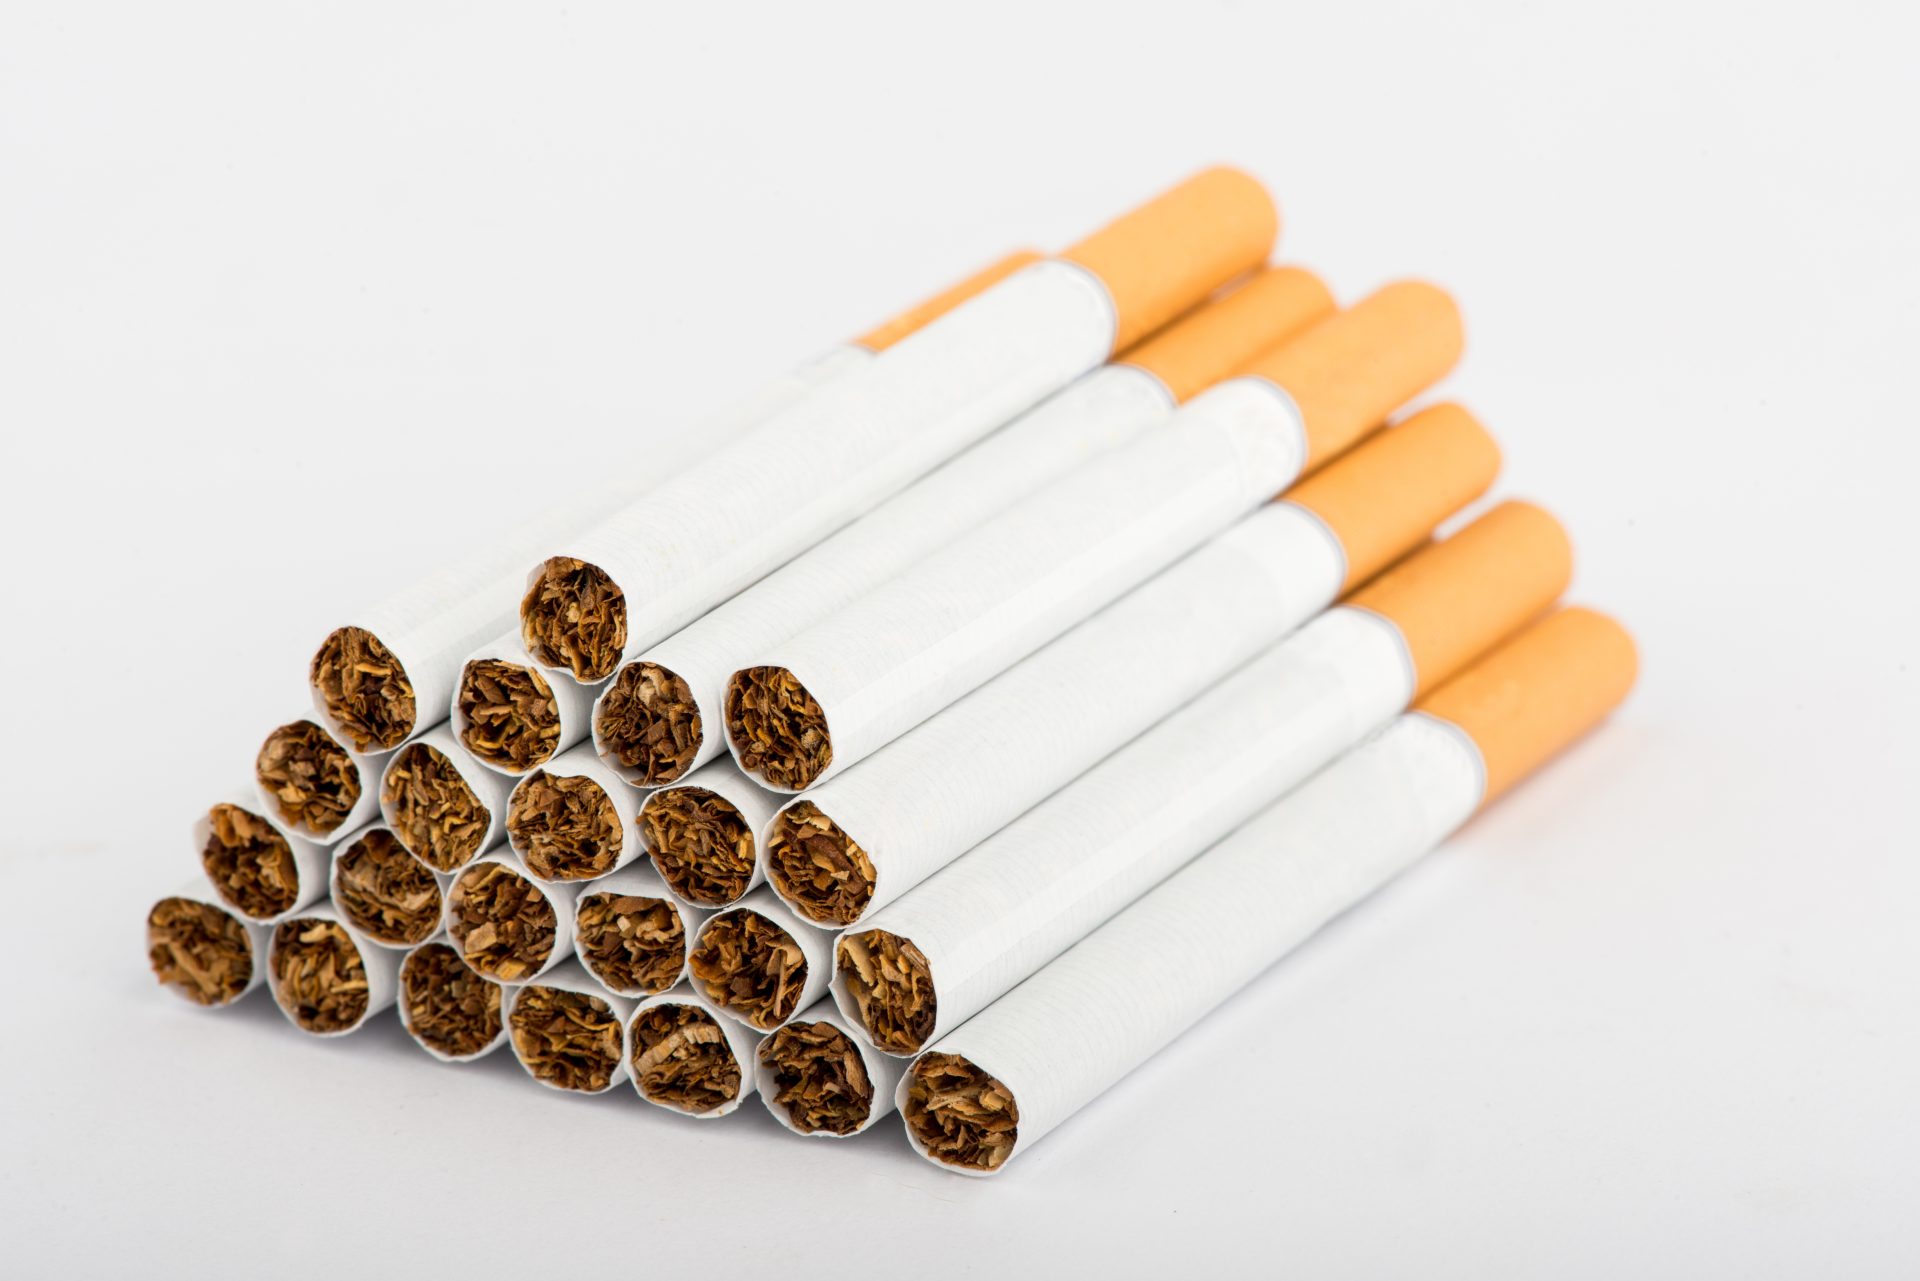 Contrabando leva Estado a perder quase quatro euros por cada maço de tabaco